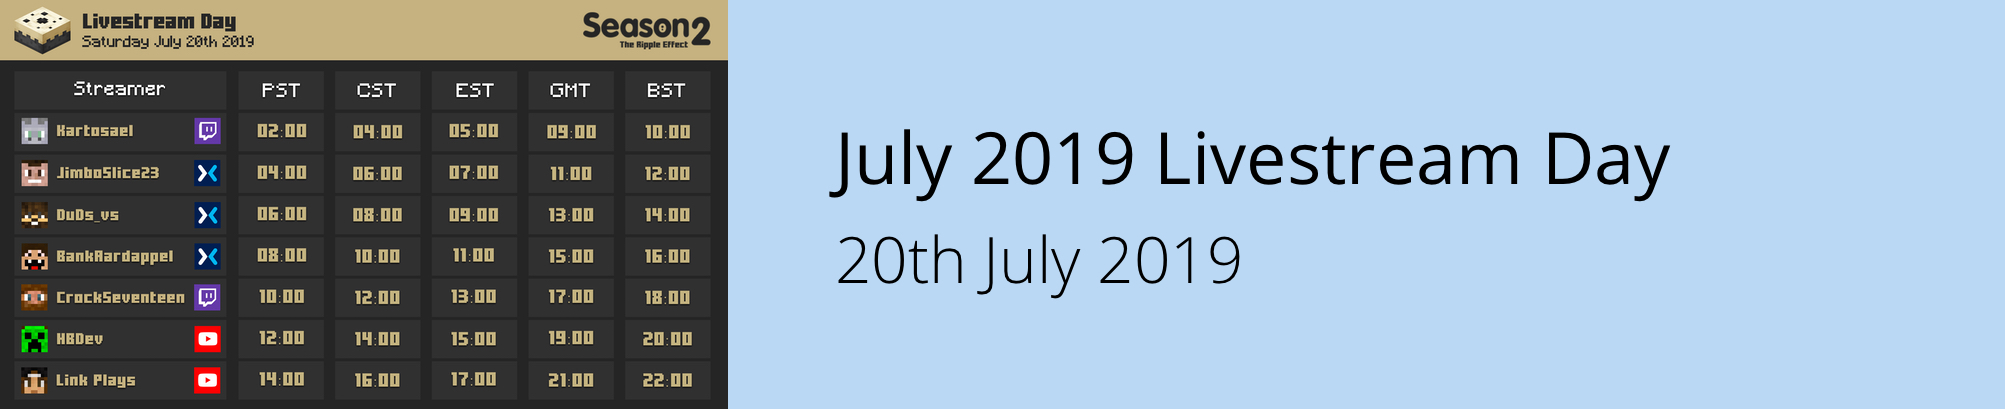 July 2019 Livestream Day